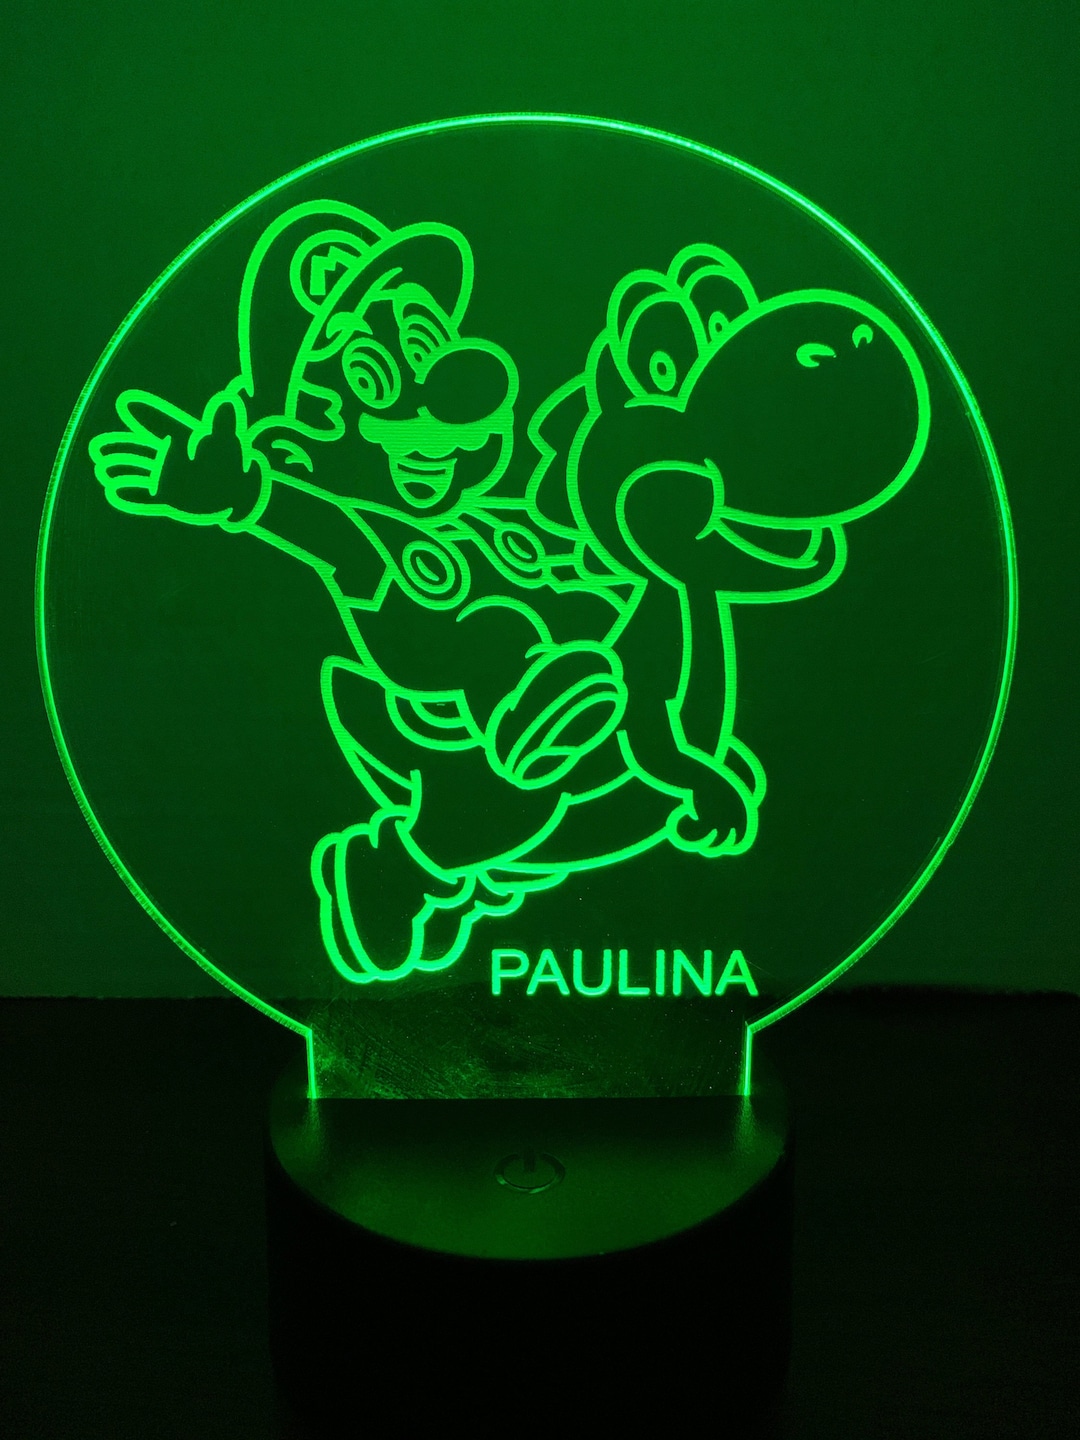 Super Mario and Yoshi LED Light Personalized Etsy 日本